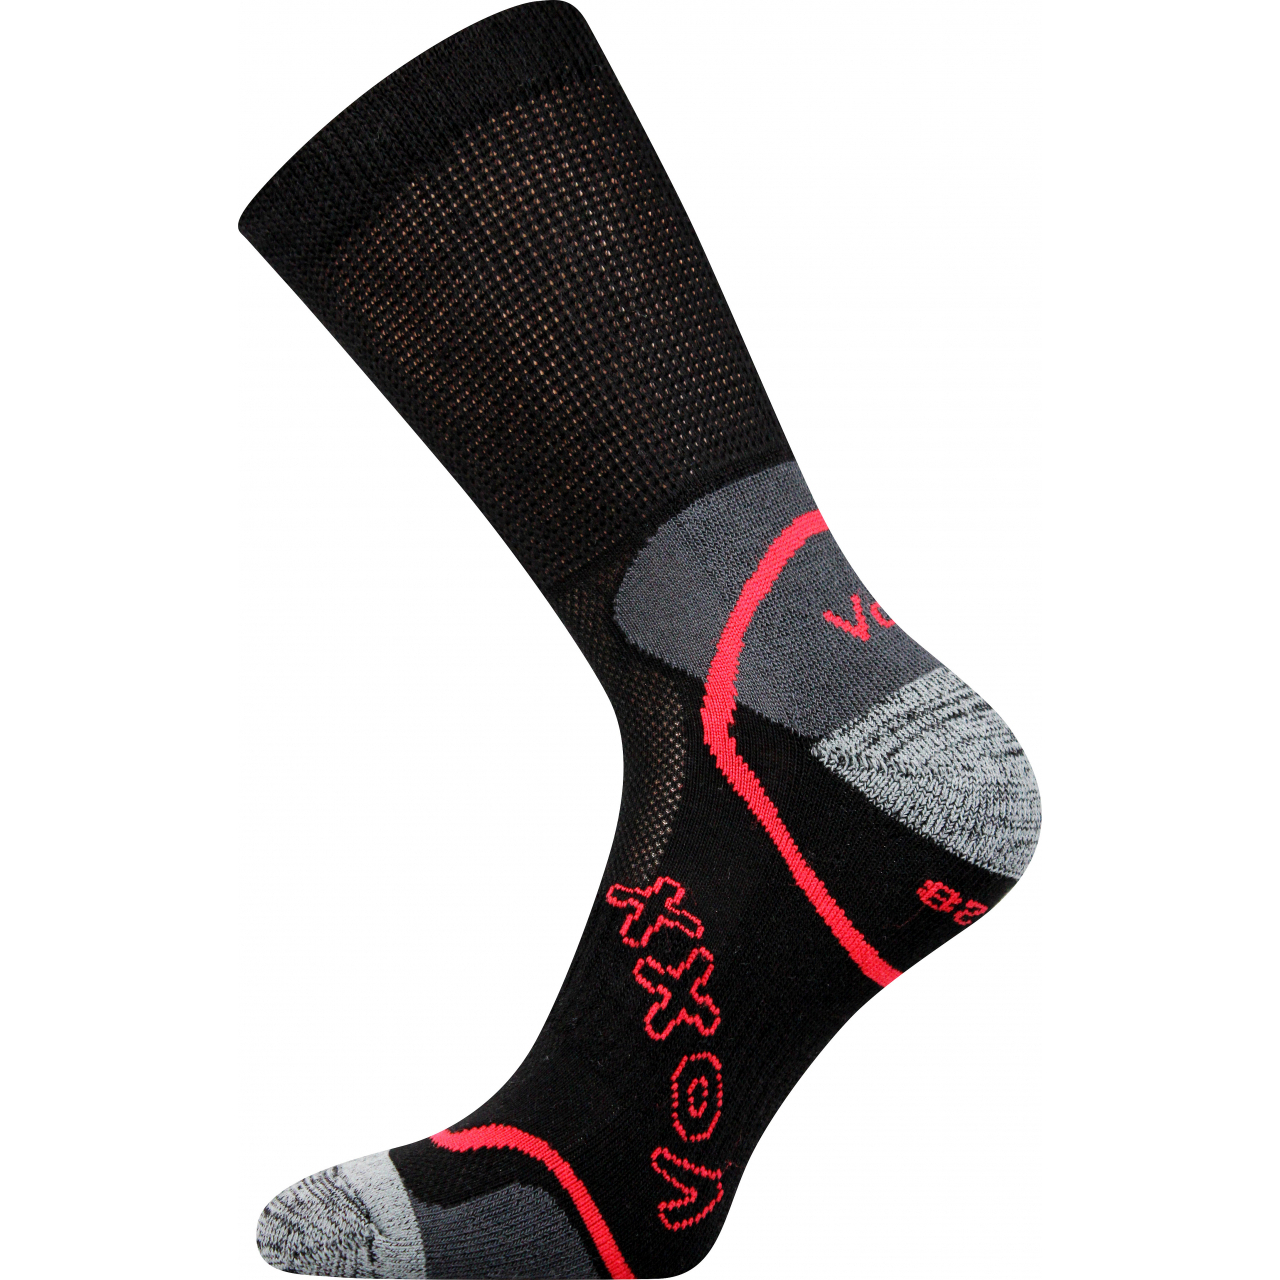 Ponožky sportovní unisex Voxx Meteor - černé, 39-42